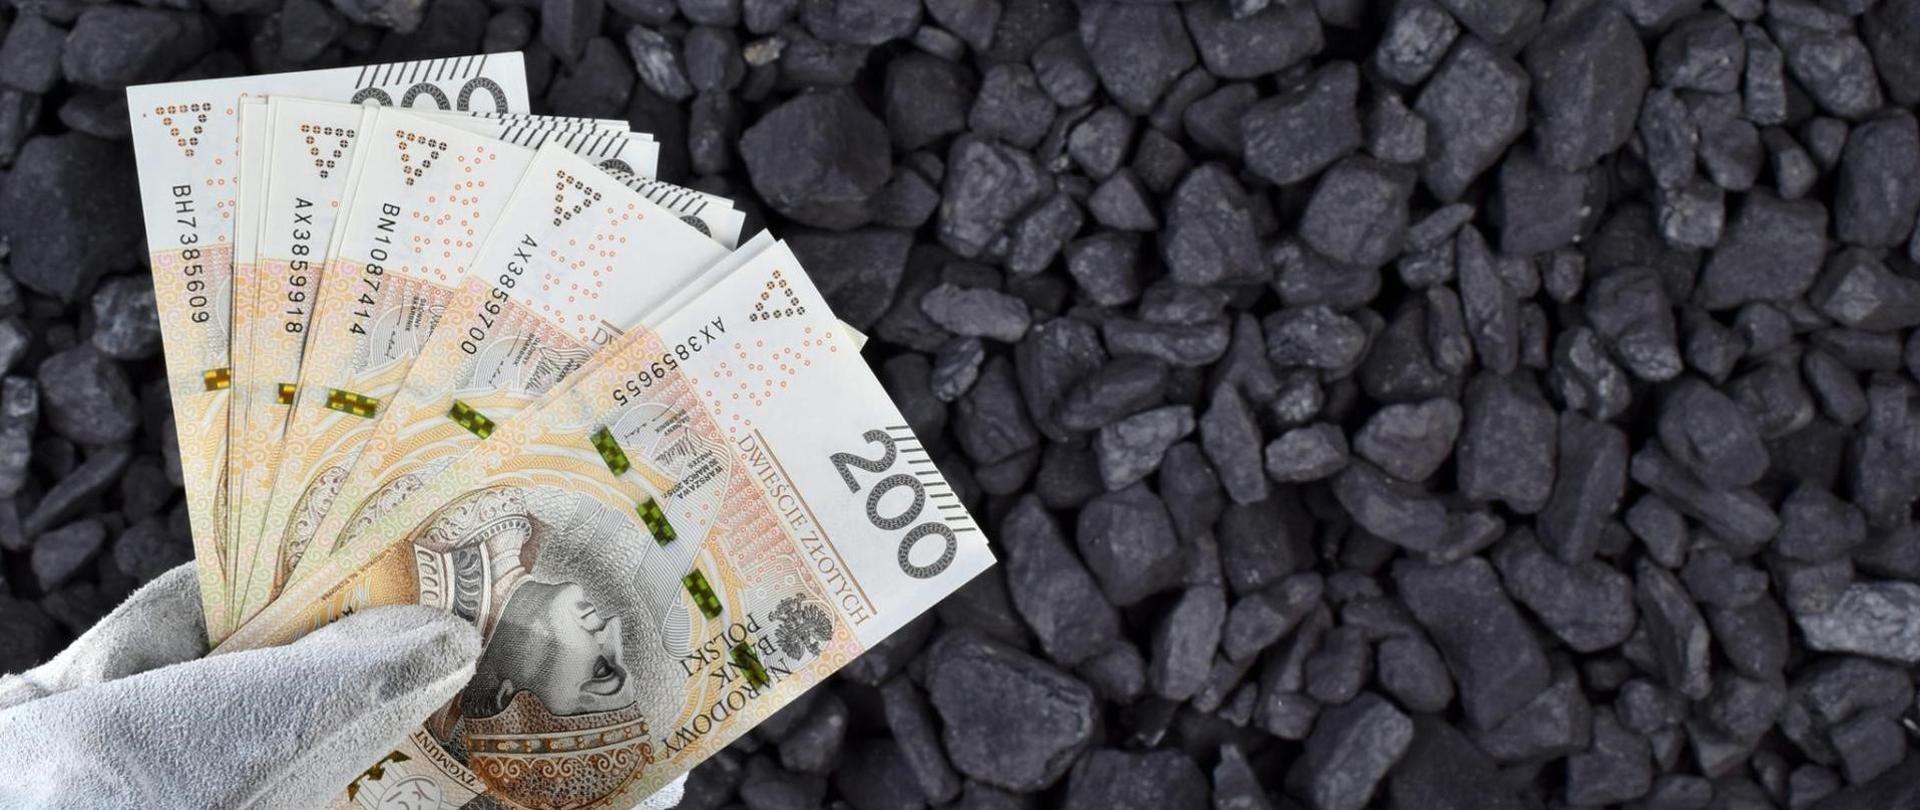 Zdjęcie dłoni w rękawicach trzymającej banknoty dwustuzłotowe na tle bryłek węgla